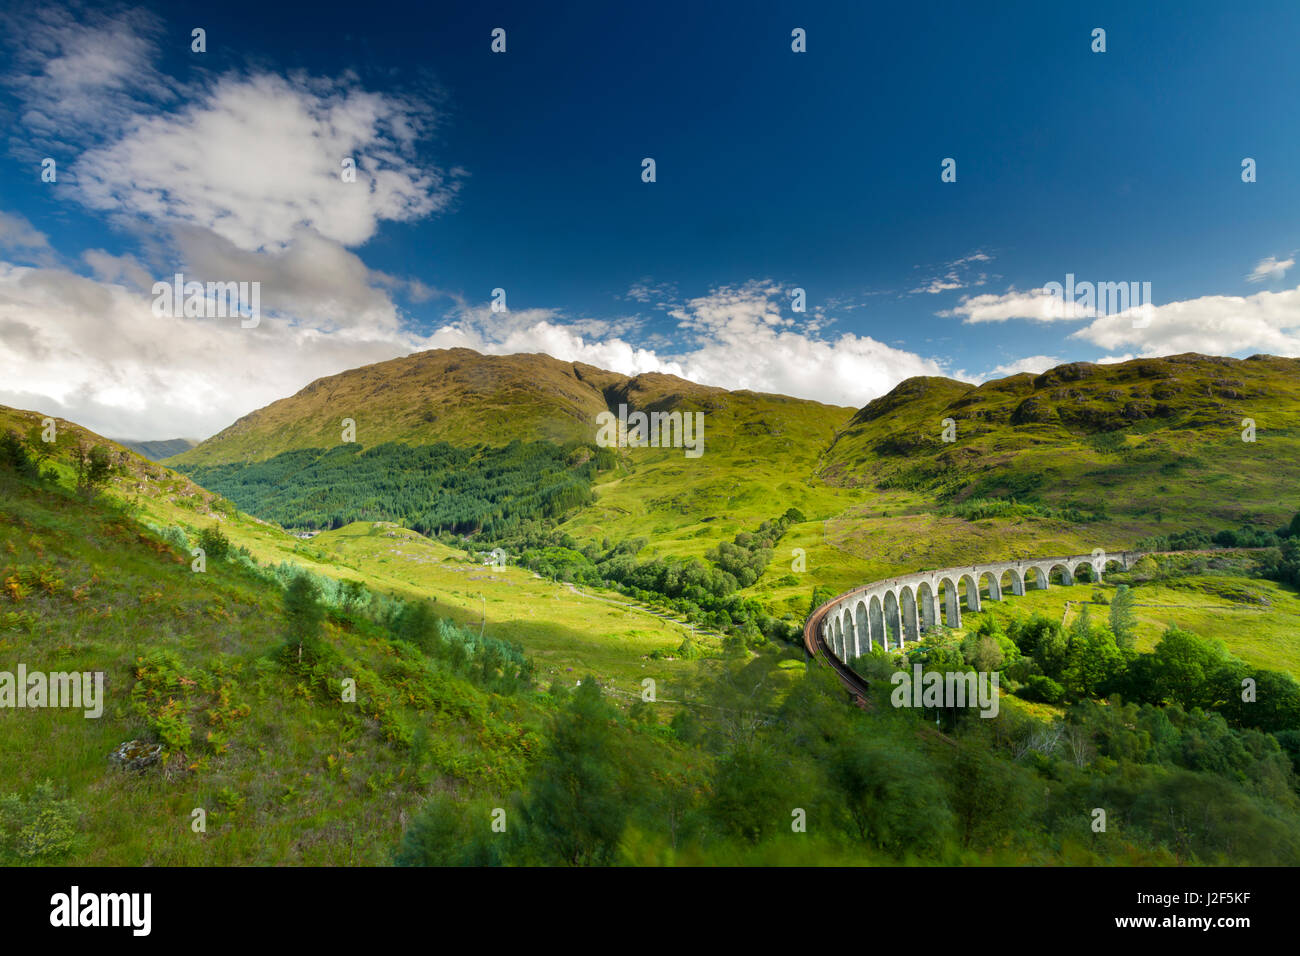 Das Glenfinnan-Viadukt, Baujahr 1898, ist als eingleisige Eisenbahnbrücke über das Tal und den Fluss gebaut. Die große Wende ist notwendig, den Zug von einem Hügel auf einem anderen Hügel führen, die die Brücke in verschiedenen Filmen wie Harry Potter verwendet worden ist. Stockfoto